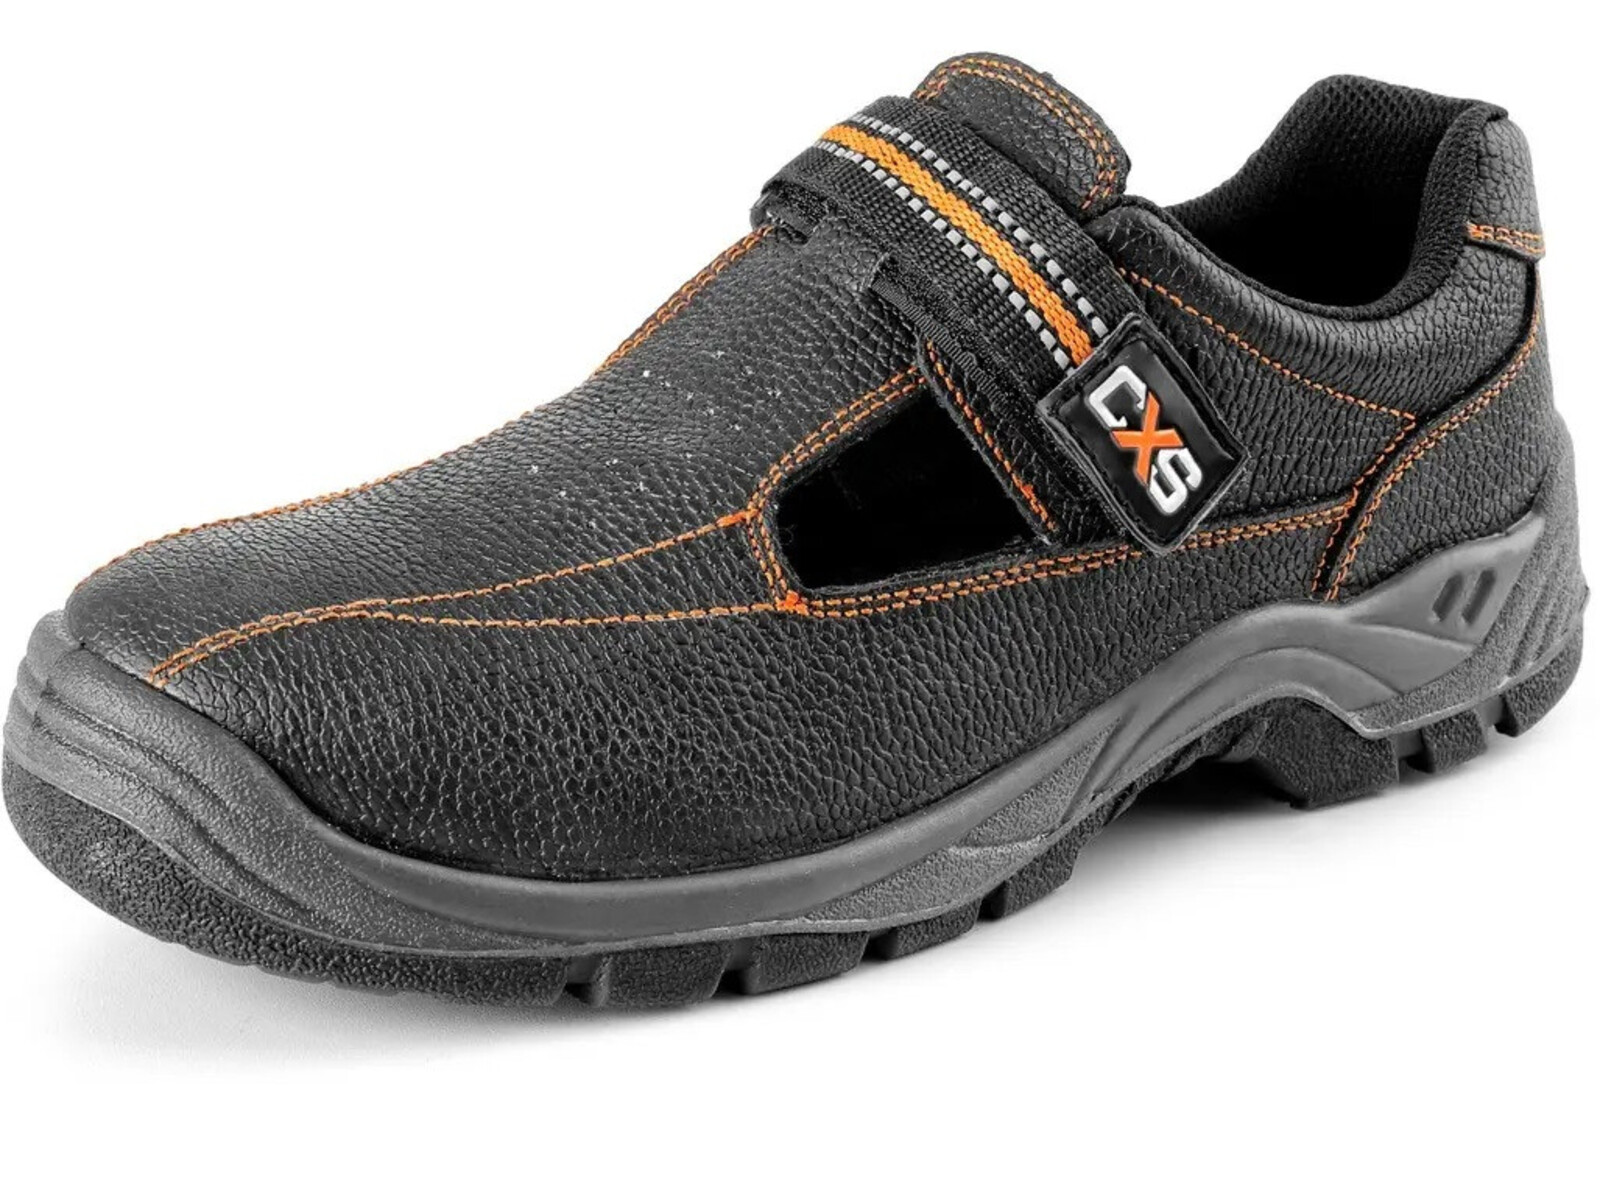 Pracovné sandále CXS Stone Nefrit O1 FO SRC - veľkosť: 41, farba: čierna/oranžová